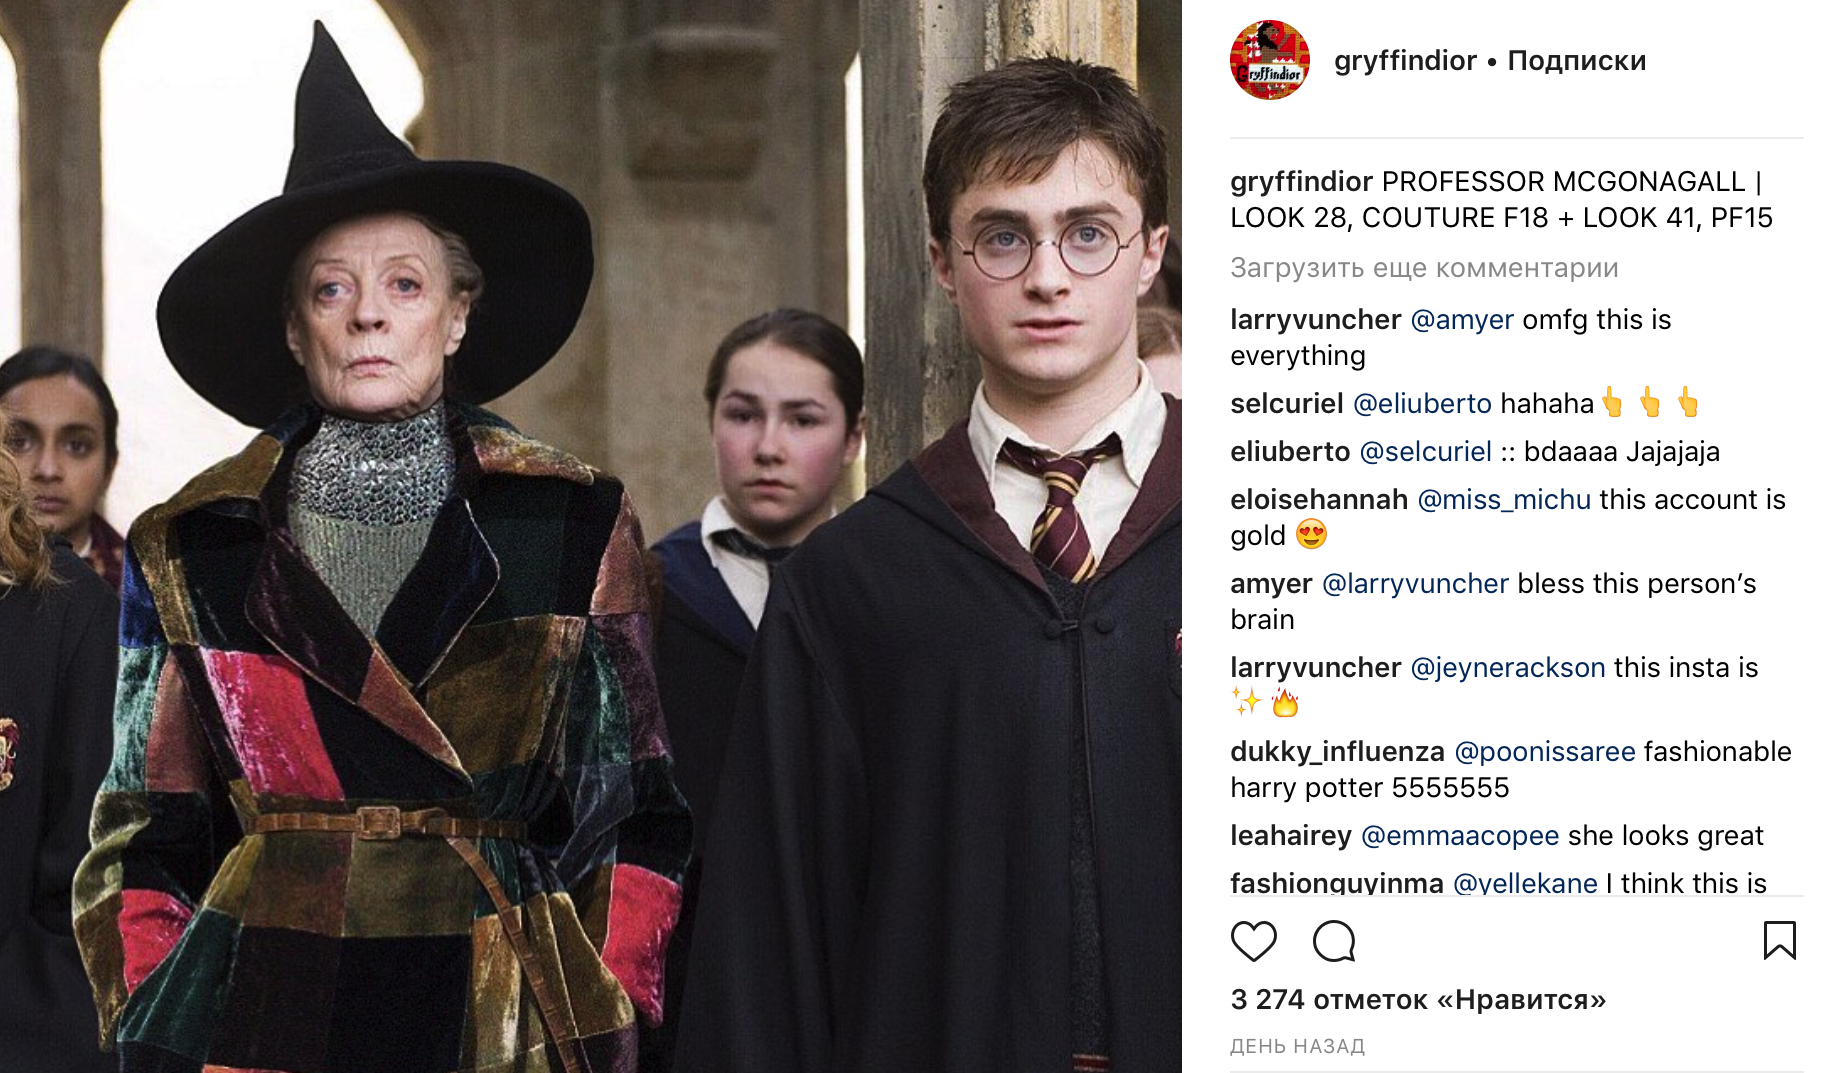 Гриффиндор выбирает Dior! А Гарри Поттер носит жилет из коллекции SS'2017